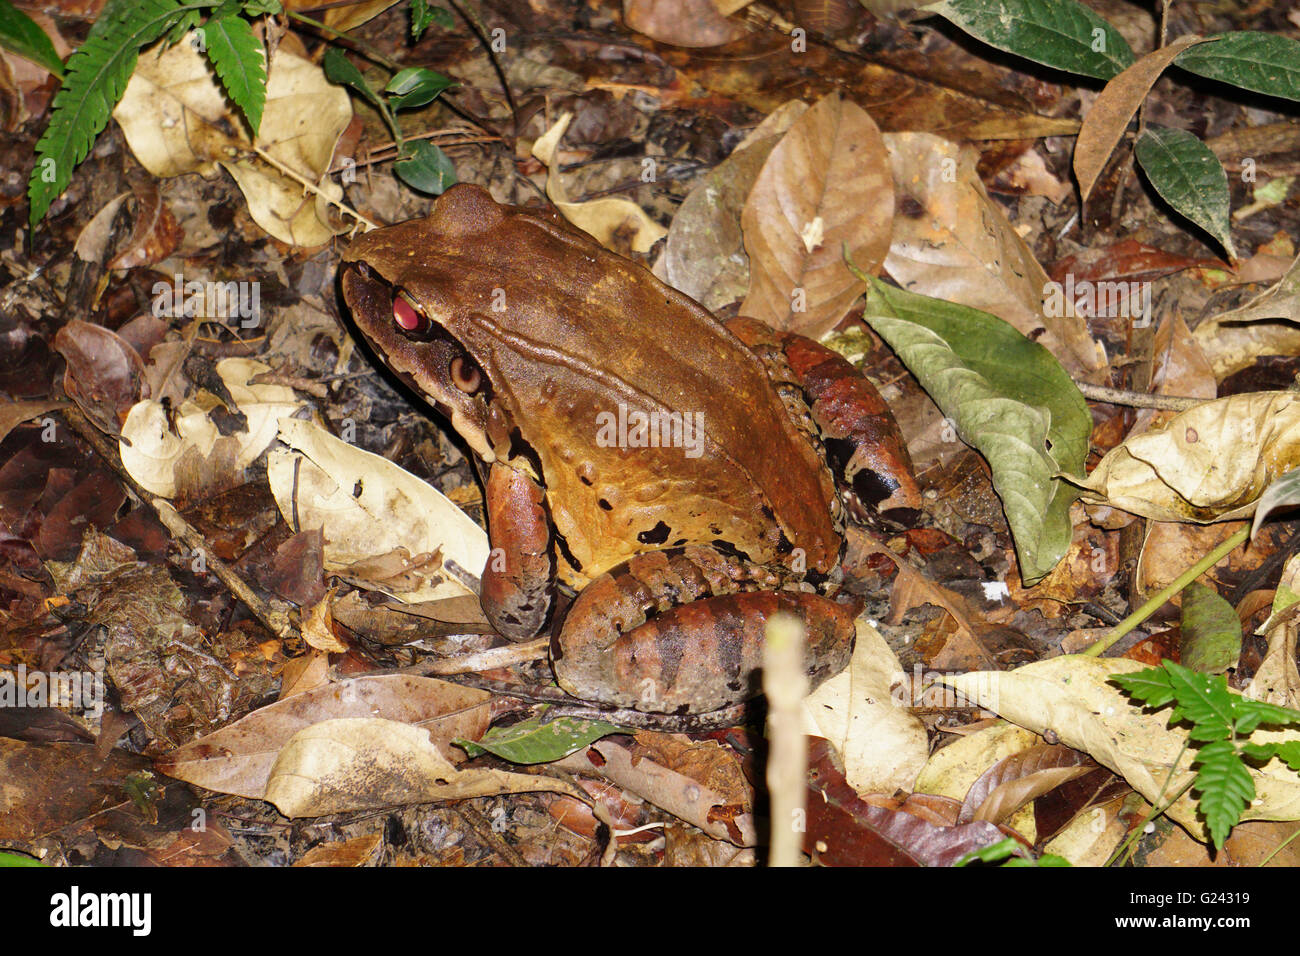 Poison dart frog (également connu sous le nom de dart-poison poison frog, grenouille ou anciennement connu sous le nom de poison arrow frog). Photographié dans la Peruv Banque D'Images